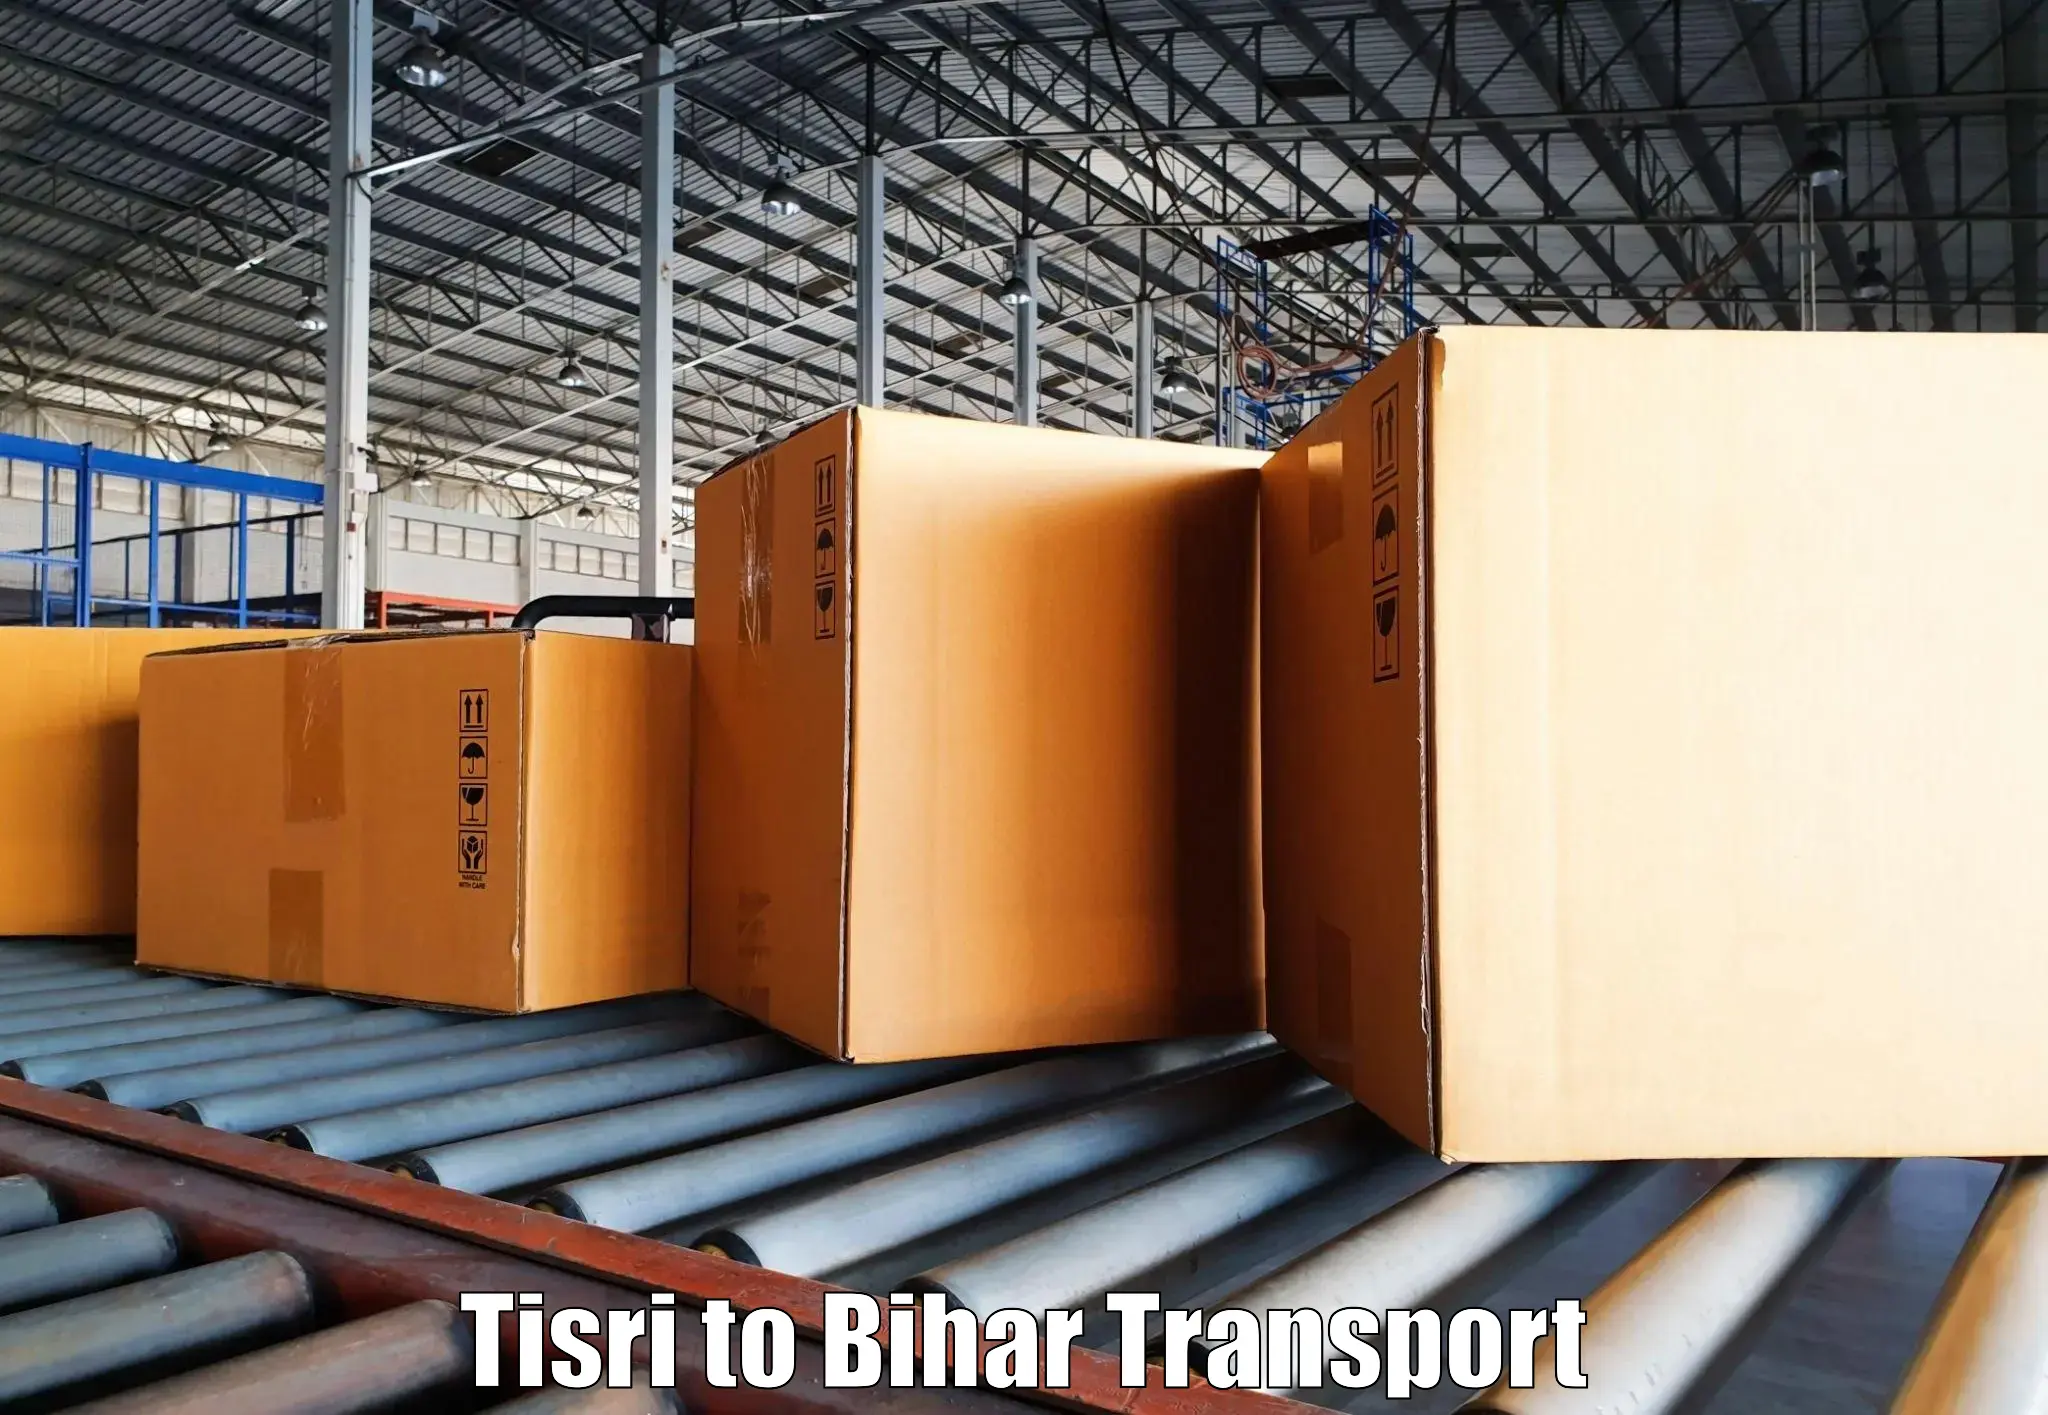 Door to door transport services Tisri to Bihar